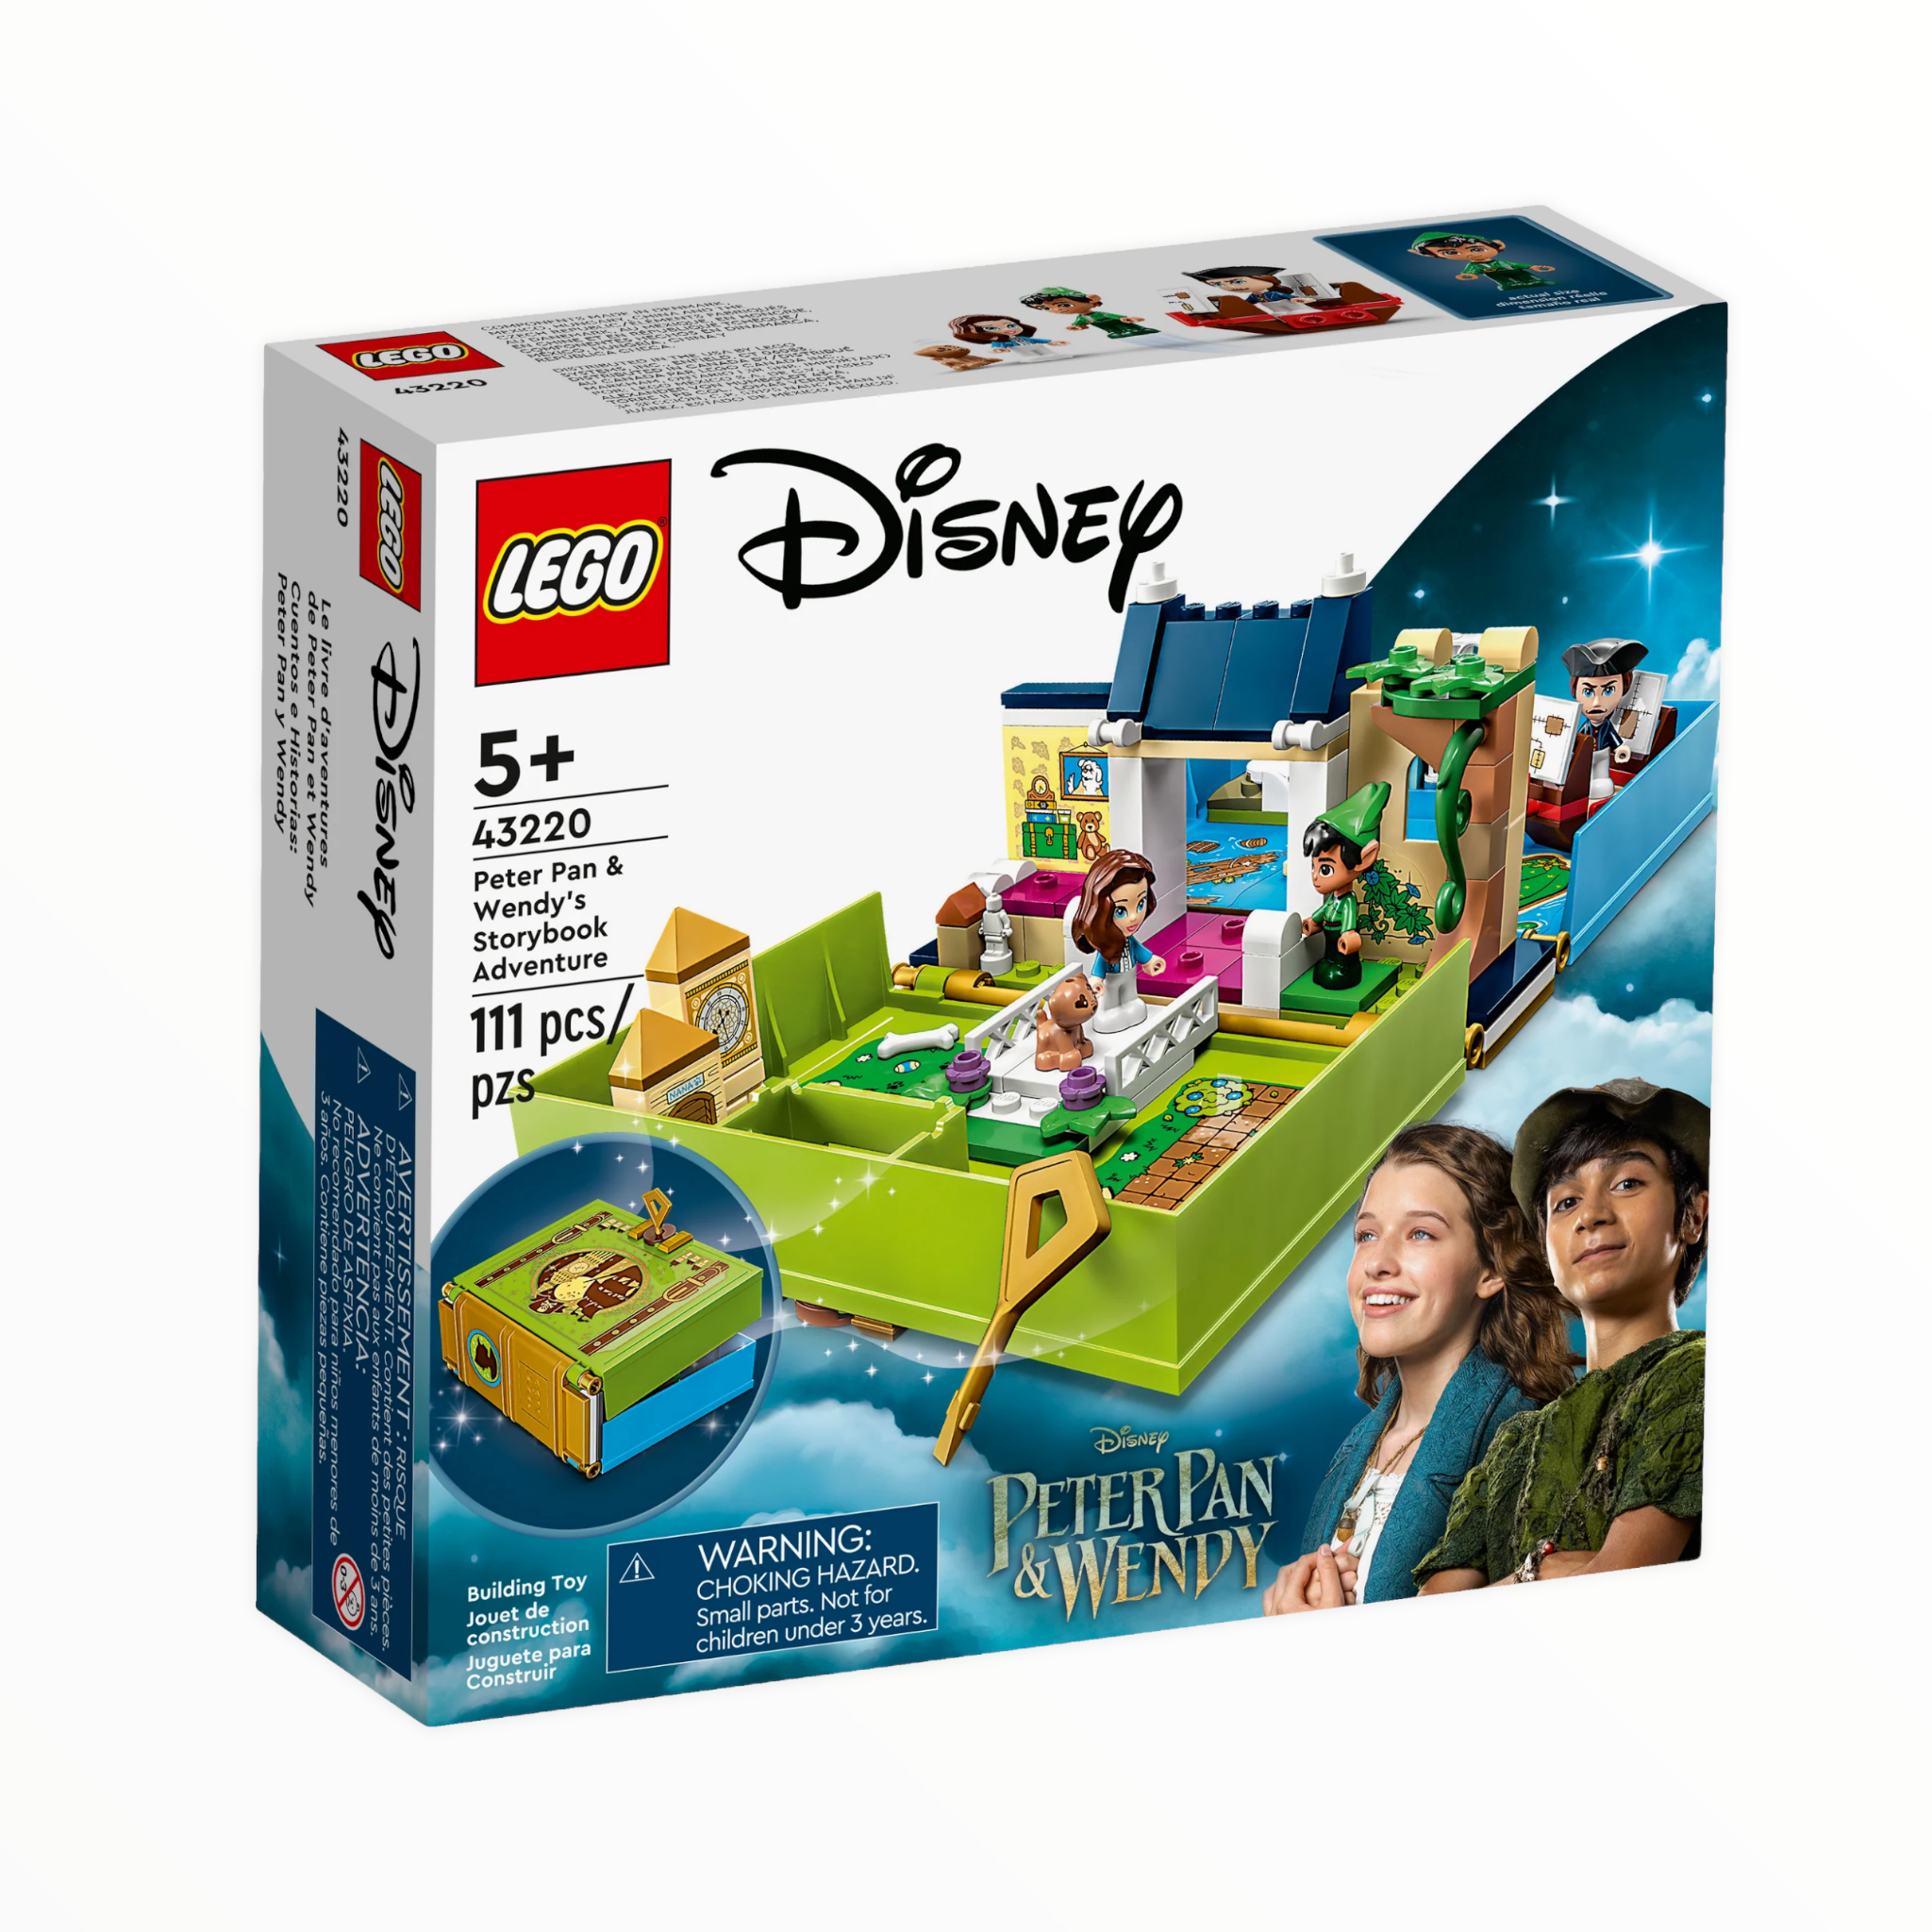 43220 Disney Peter Pan & Wendy's Storybook Adventure